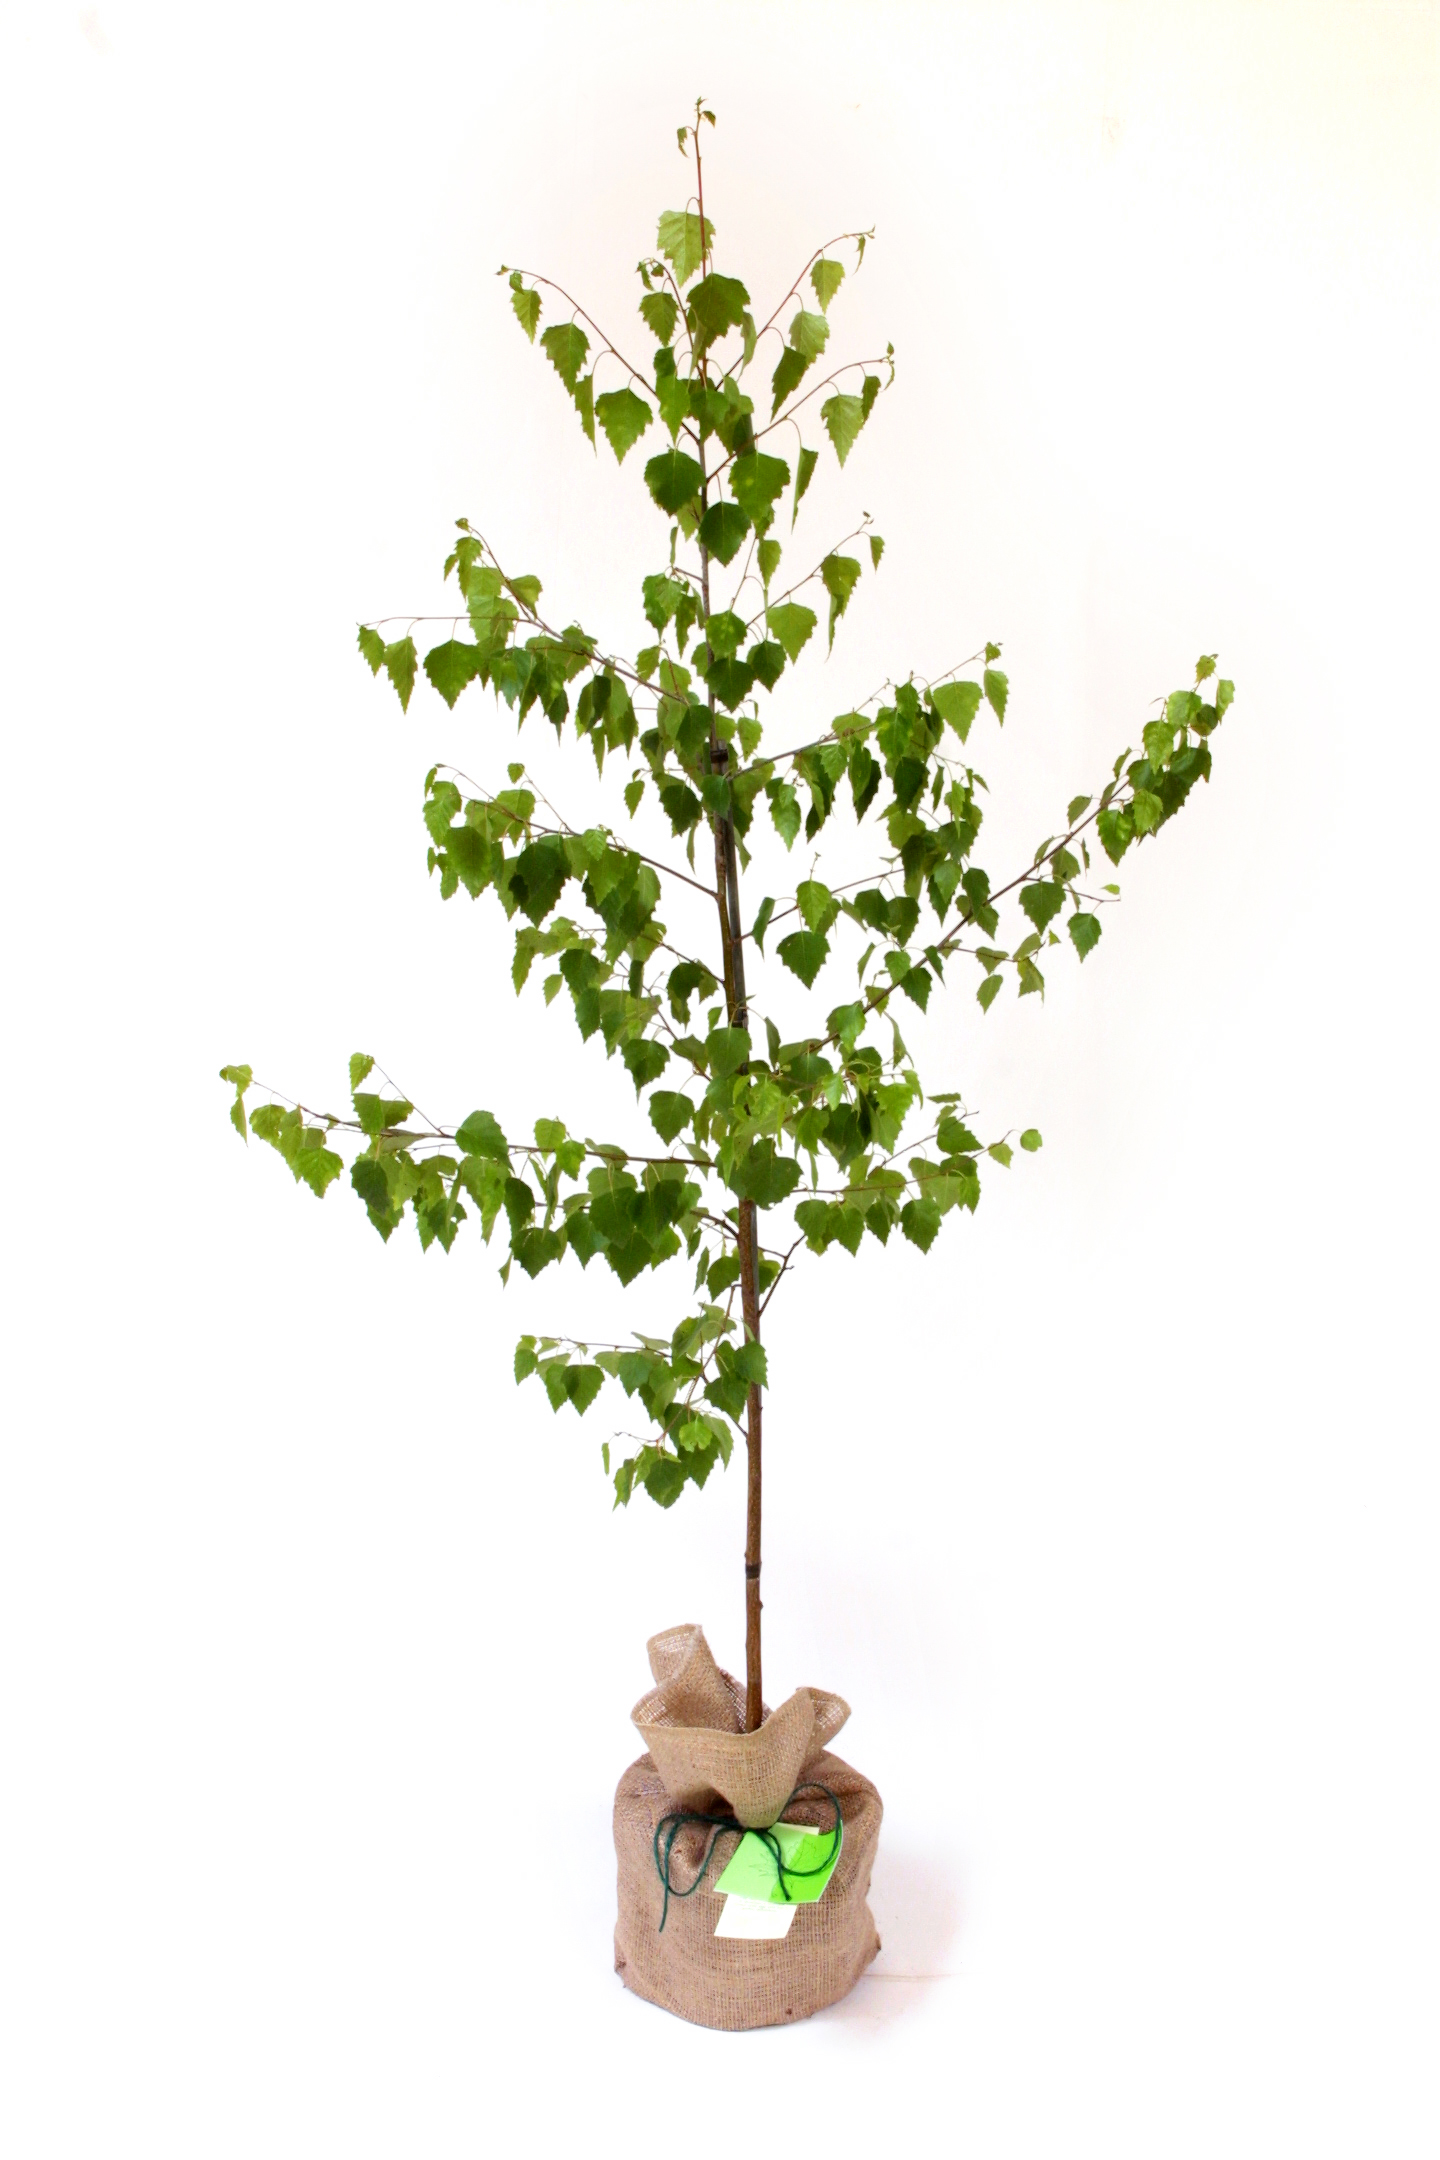 Silver Birch Tree - Betula pendula